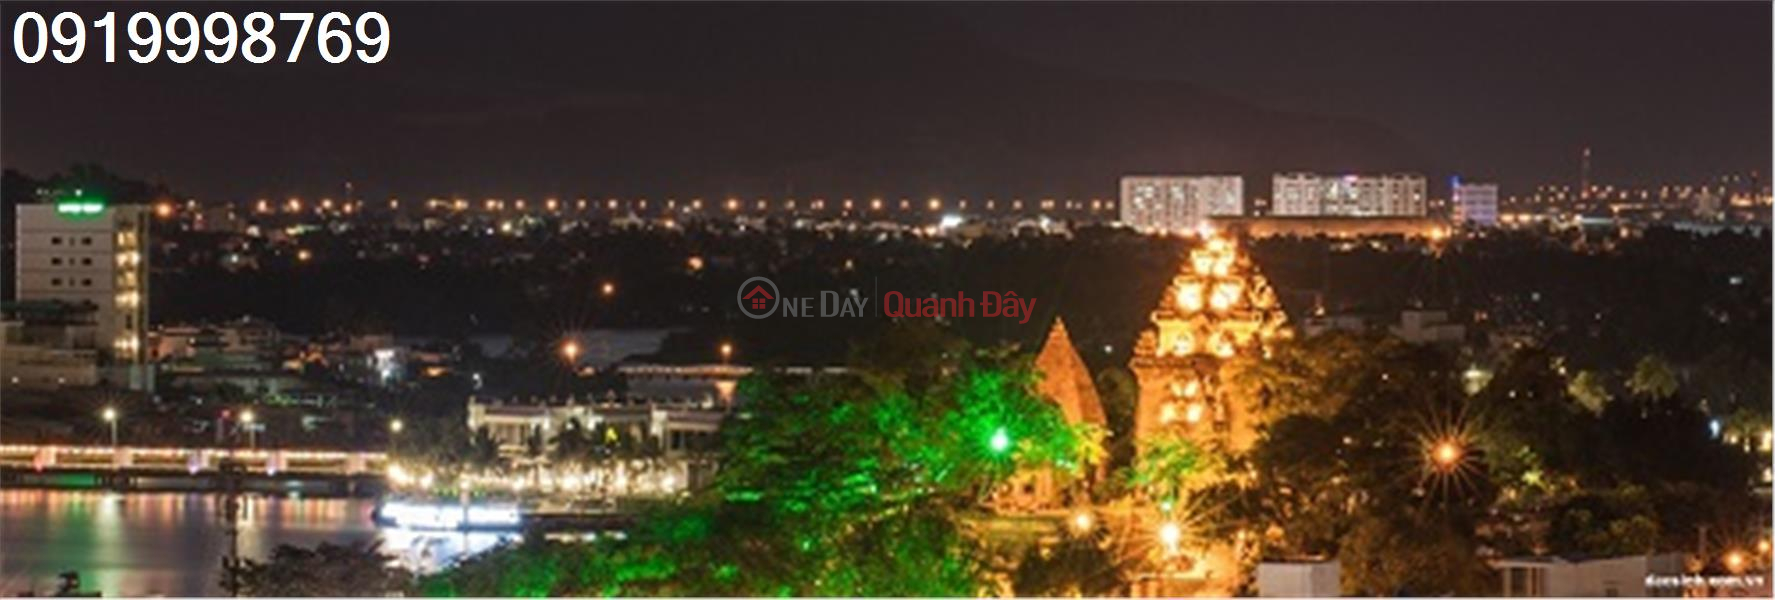 Property Search Vietnam | OneDay | Nhà ở, Niêm yết bán, Chuyển nhượng mảnh đất khách sạn mini hẻm 96 Trần Phú, Lộc Thọ, tp Nha Trang.